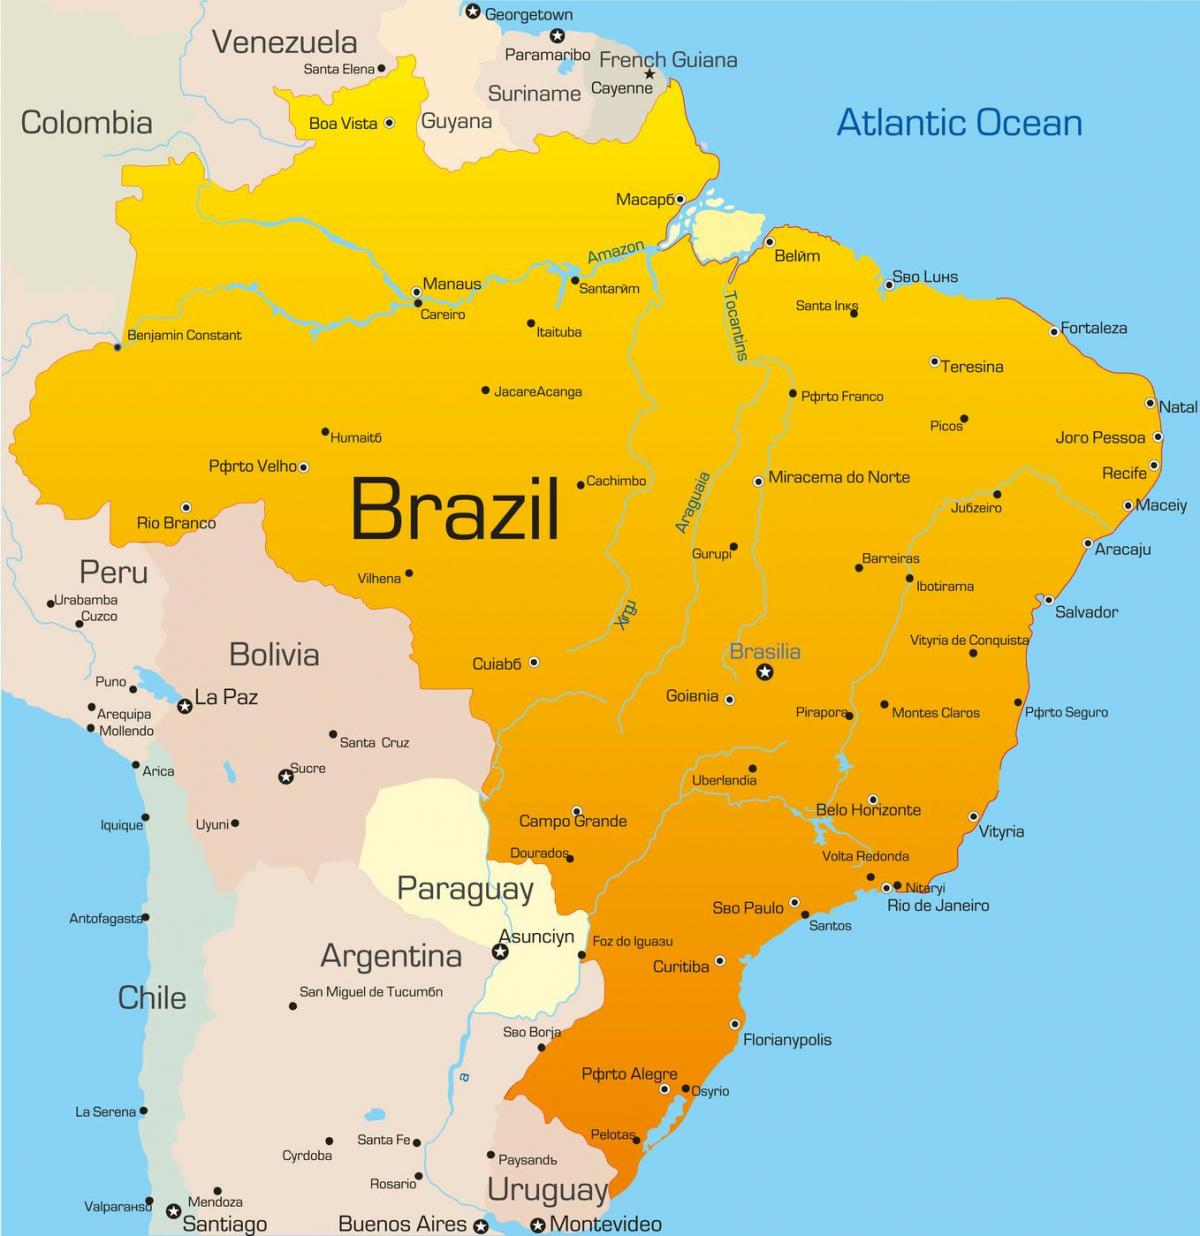 บราซิลแผนที่ประเทศ-ประเทศของแผนที่บราซิล(อเมริกาใต้-Americas)